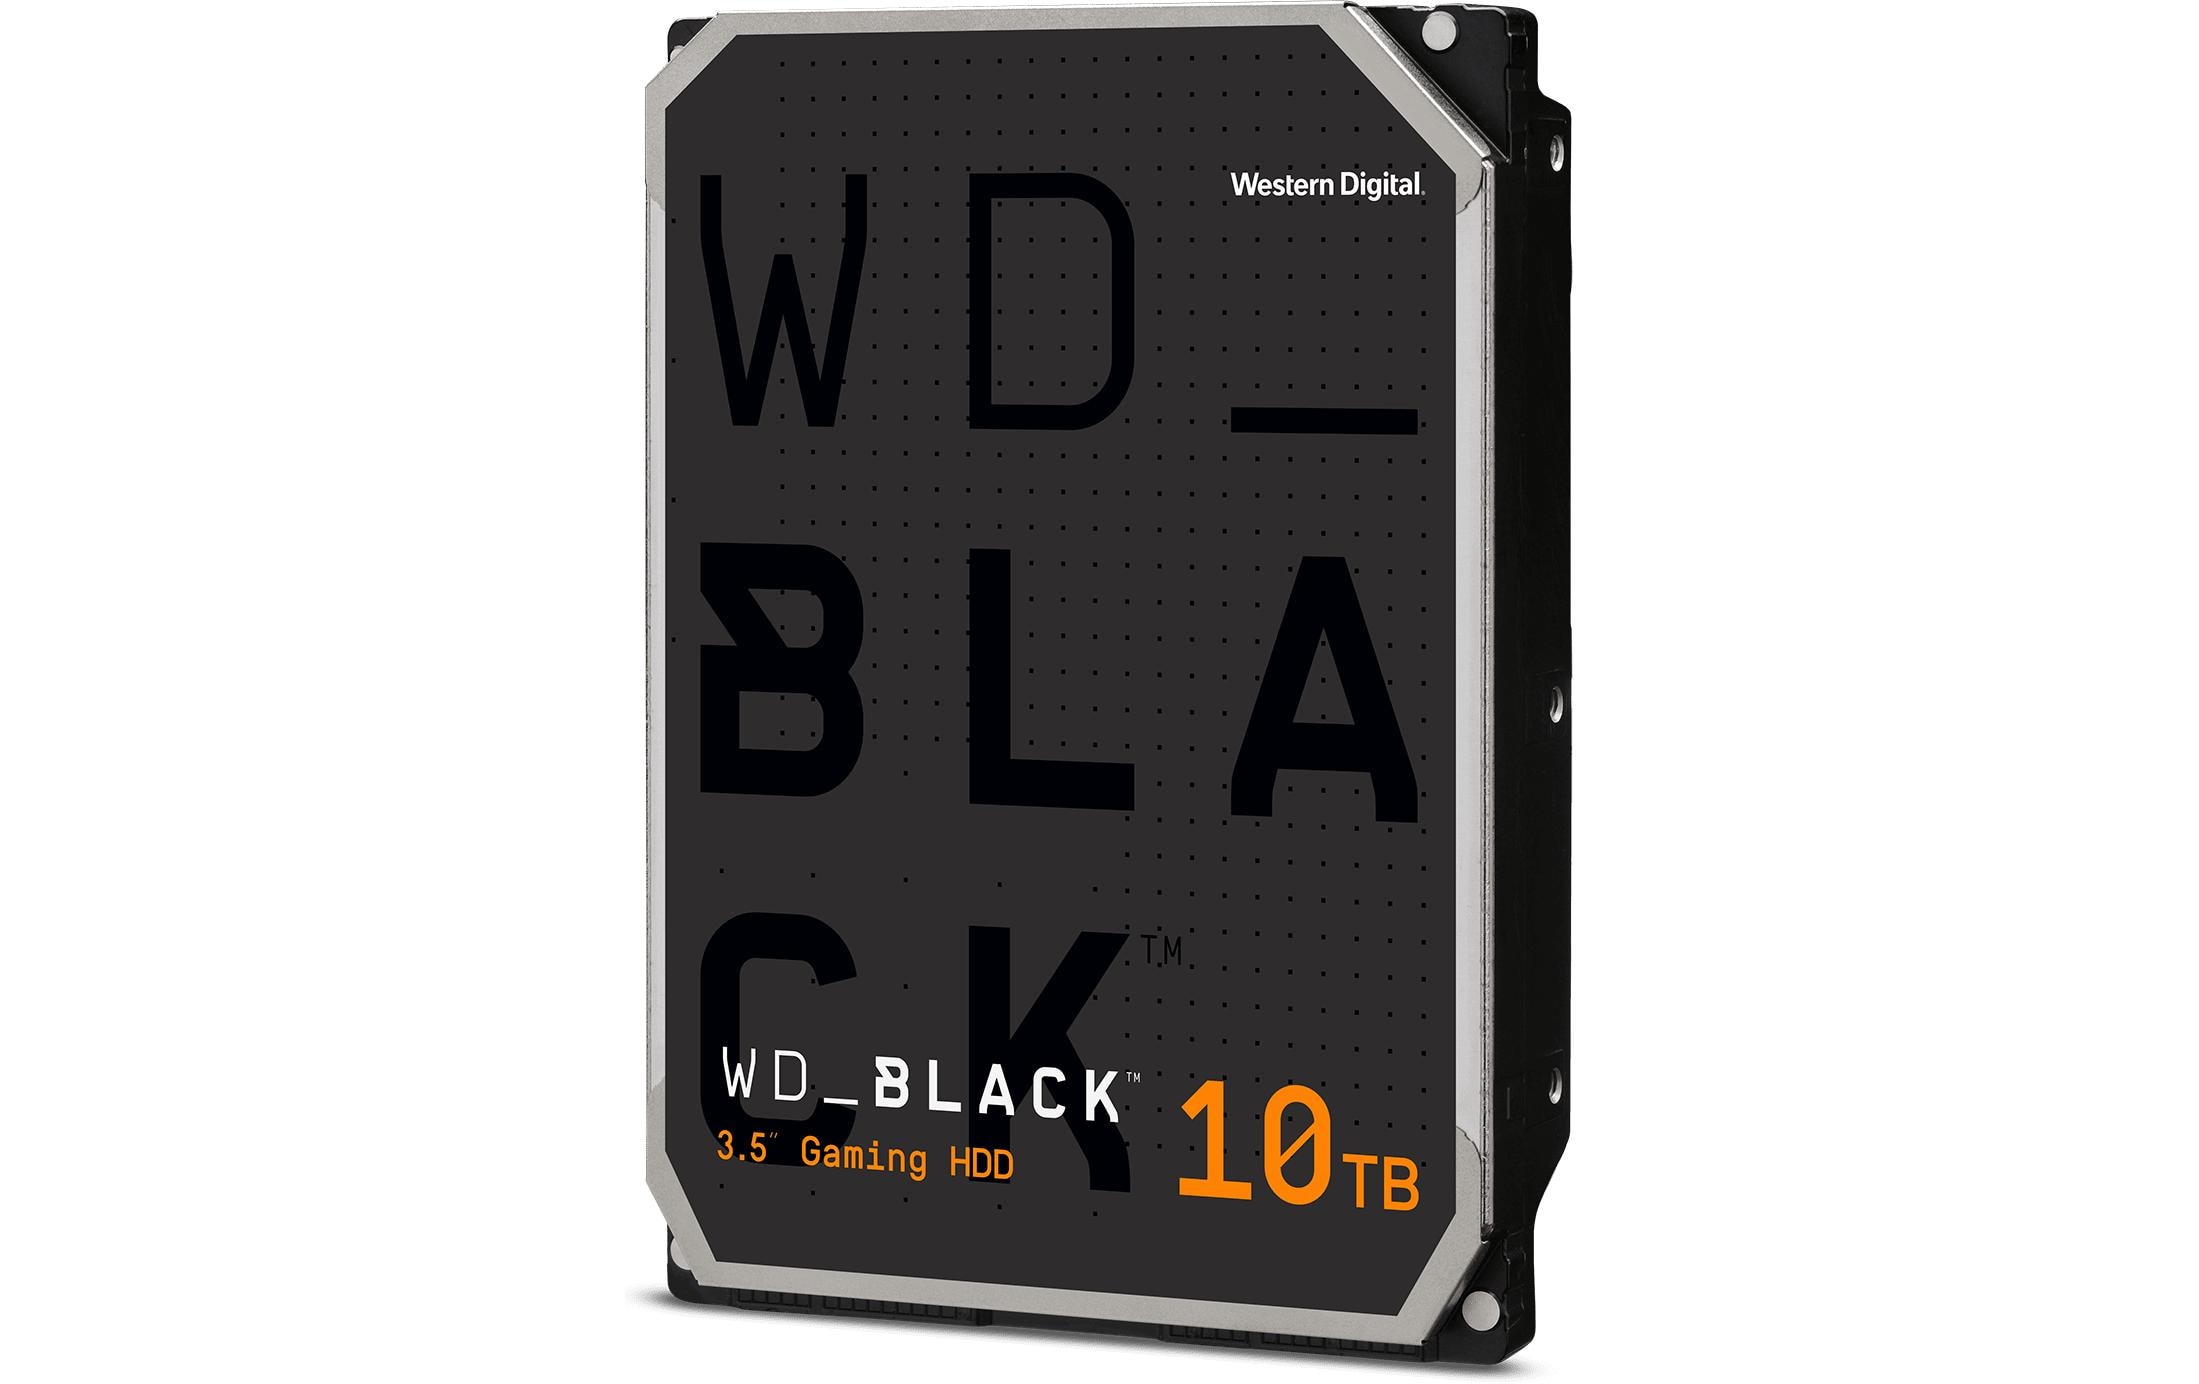 WD Black Harddisk WD Black 3.5 SATA 10 TB